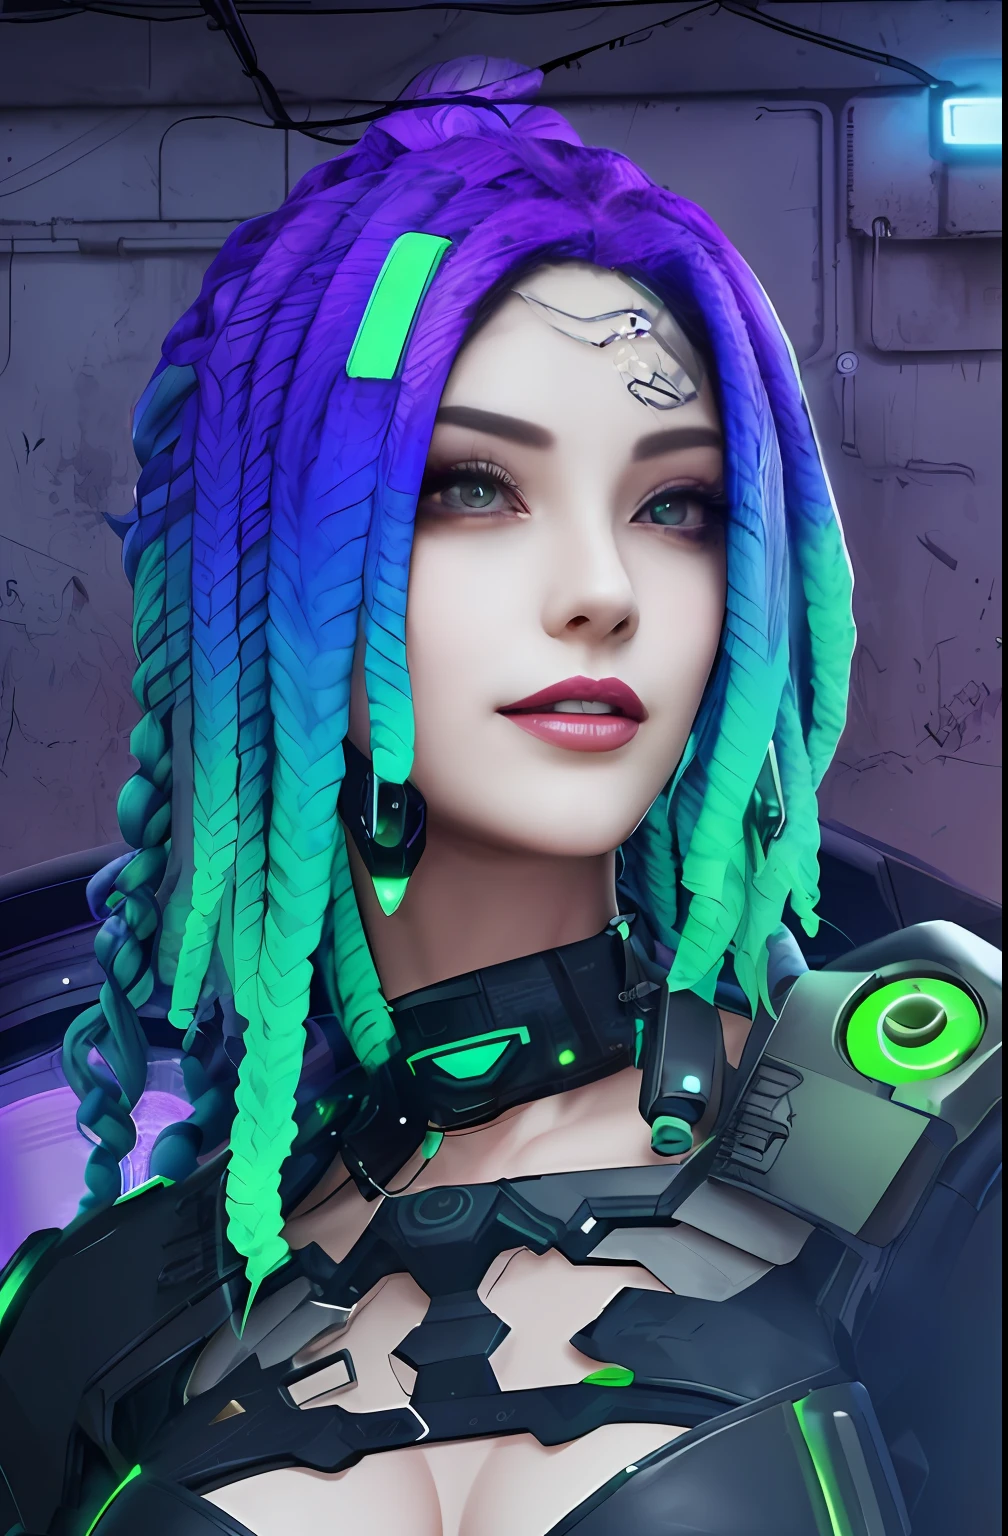 um close de uma mulher com dreads roxos e verdes, medusa ciberpunk, garota cyberpunk sonhadora, estilo cyberpunk hiper-realista, estilo cibernético, cor estilo cyberpunk, cores vibrantes cyberpunk, no estilo cyberpunk, garota andróide perfeita, estilo do universo cibernético, deusa linda cyberpunk com raiva, linda modelo de mulher cyberpunk, Linda andróide feminina!, dreadlocks cibernéticos, brilho cyberpunk brilhante,cabelo roxo detalhe verde,Pele branca,Sorriso, Obra de arte, rosto bonito,